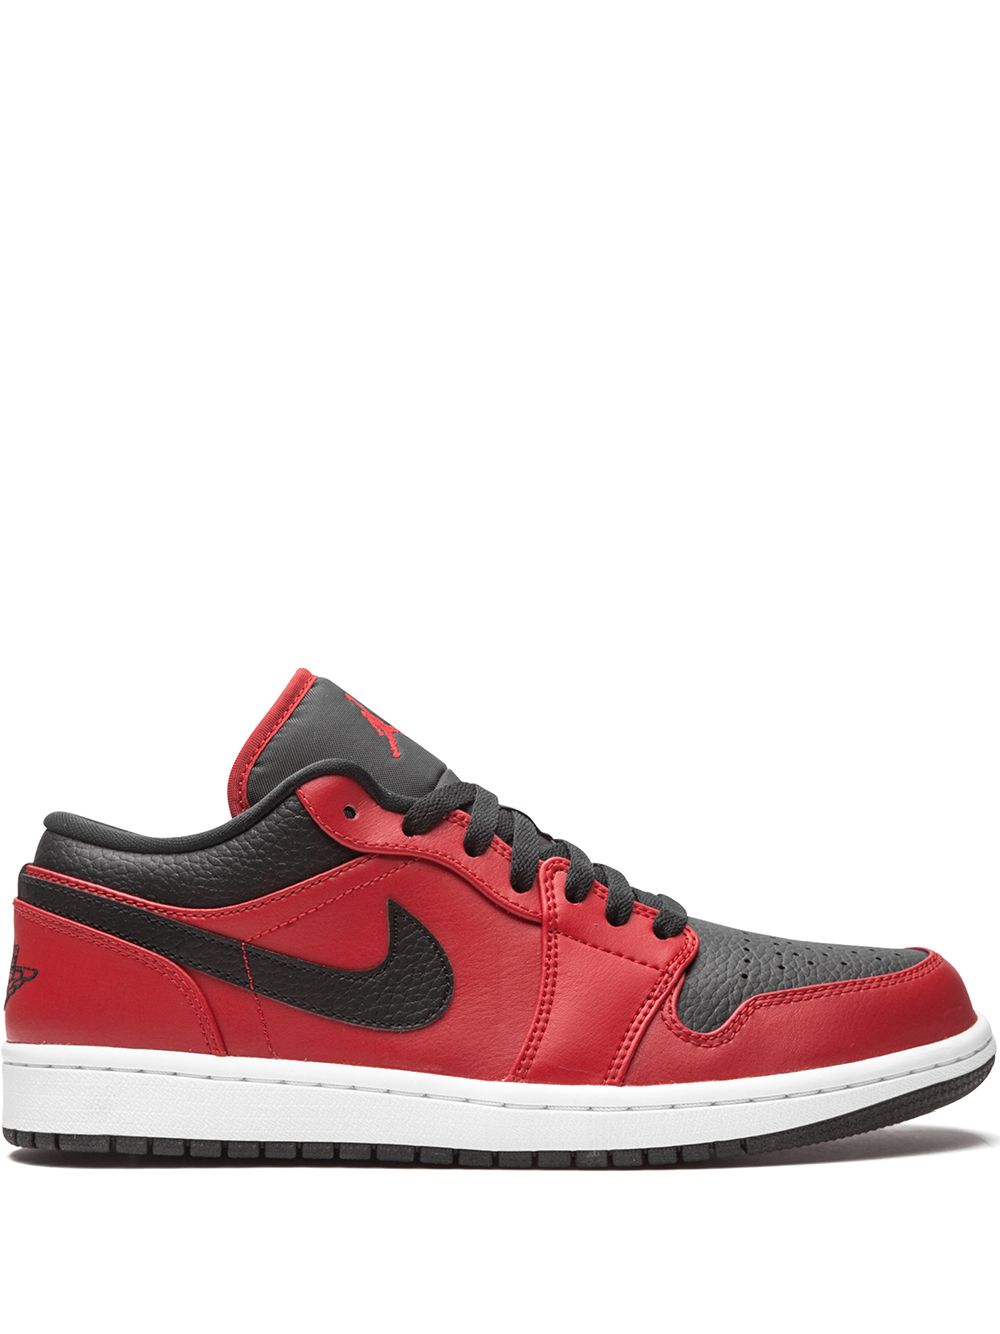 Image 1 of Jordan Air Jordan 1 Low "Gym Red" sneakers